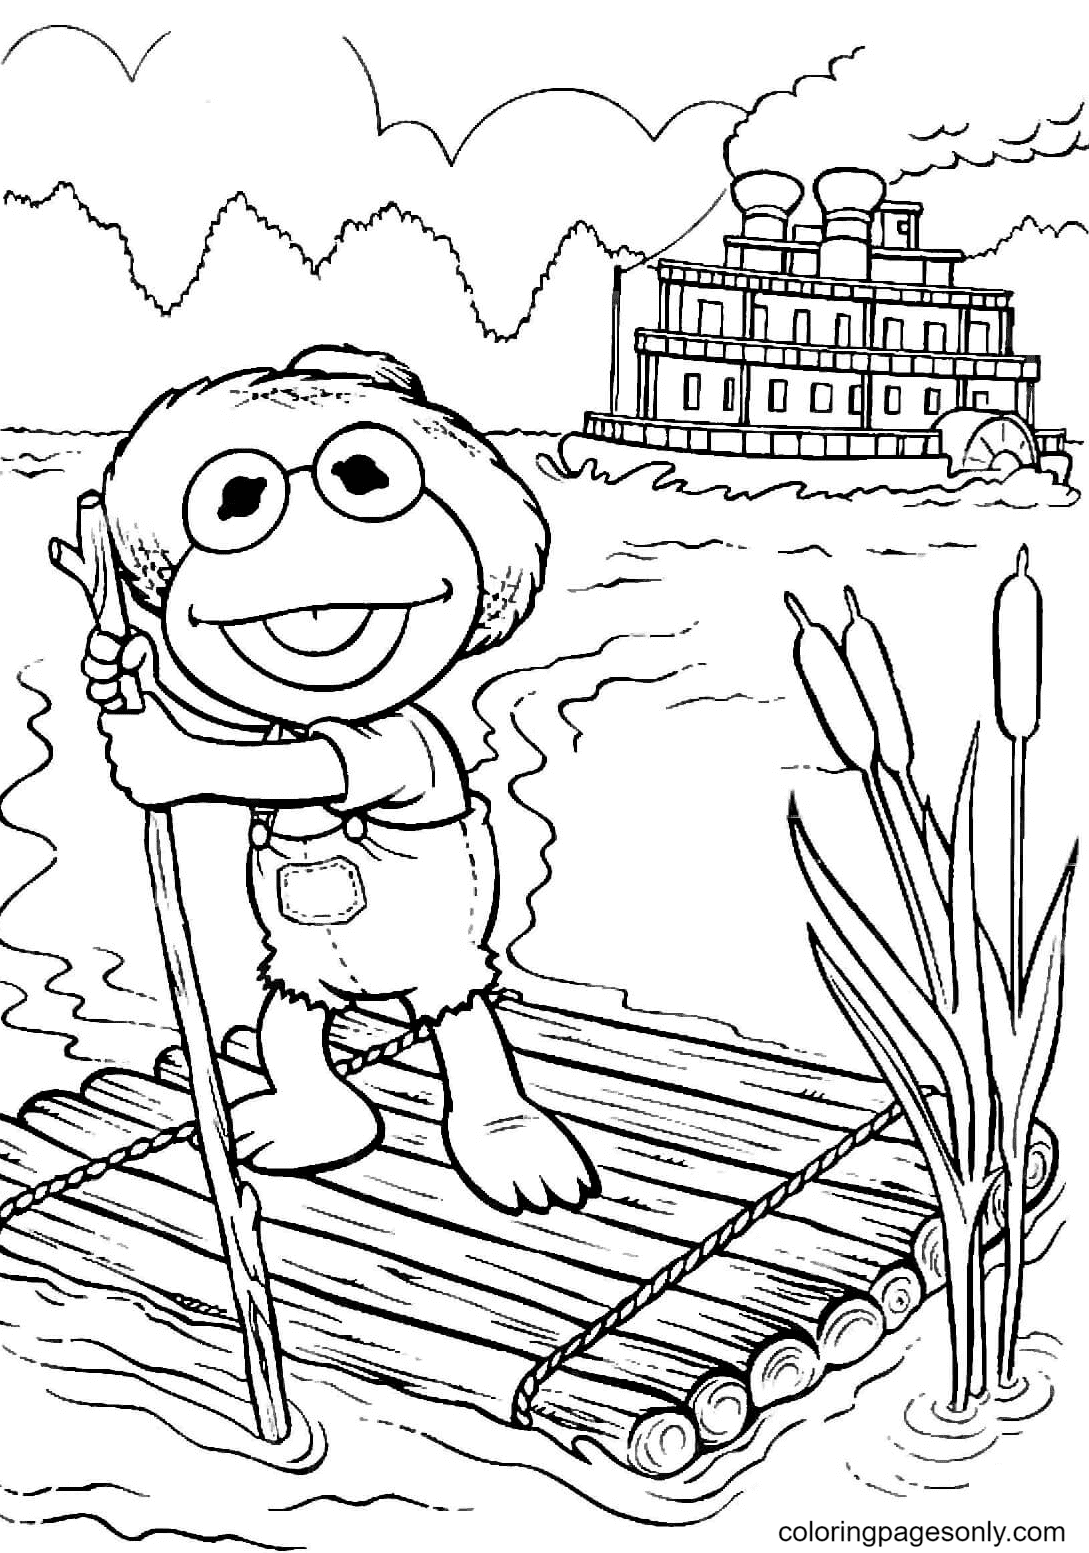 克米特 (Kermit) 在《布偶婴儿》中饰演汤姆·索亚 (Tom Sawyer) 在木筏上